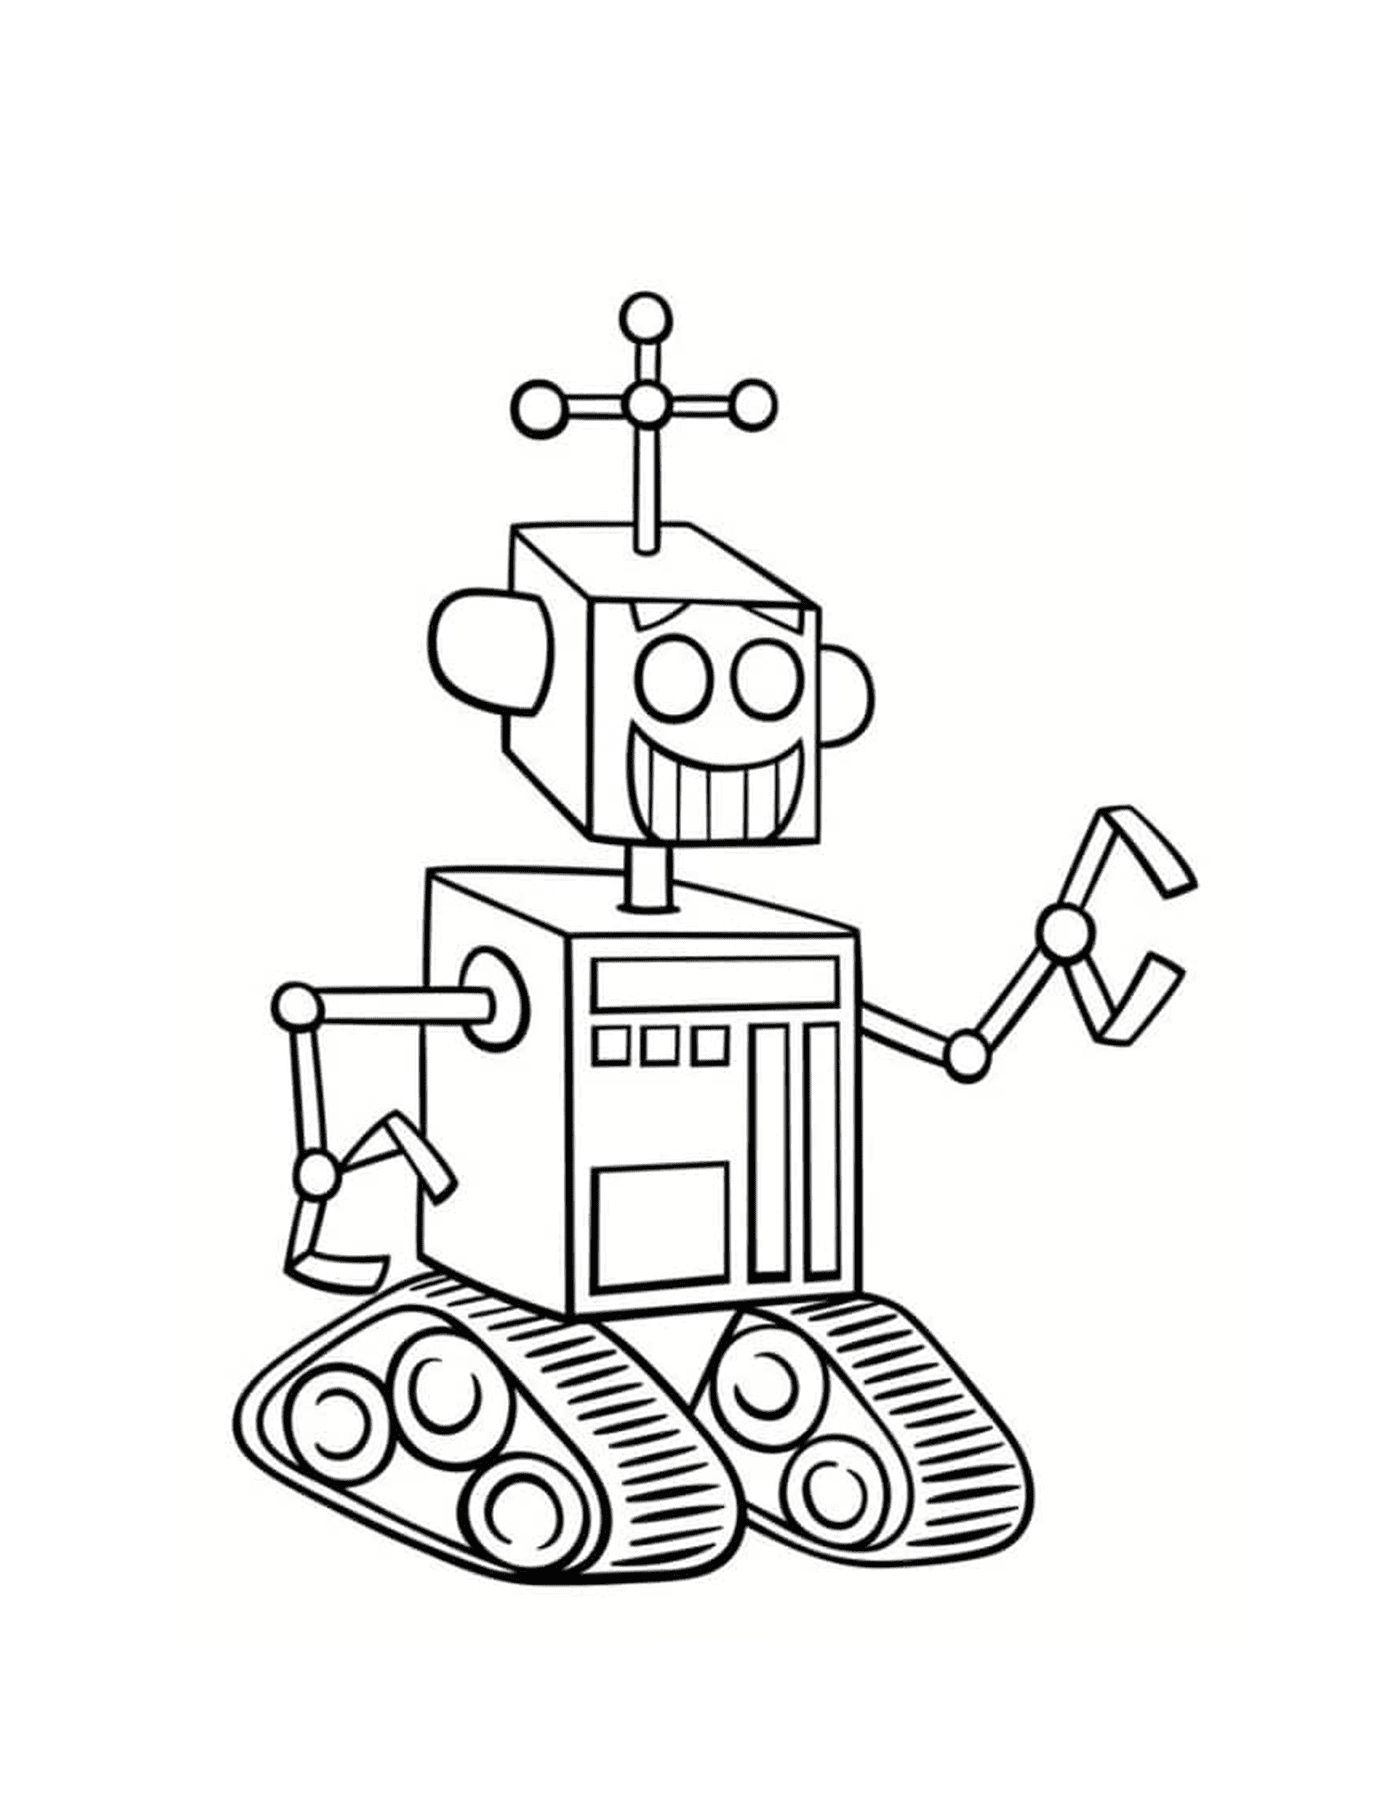  Robot teletrasporto 